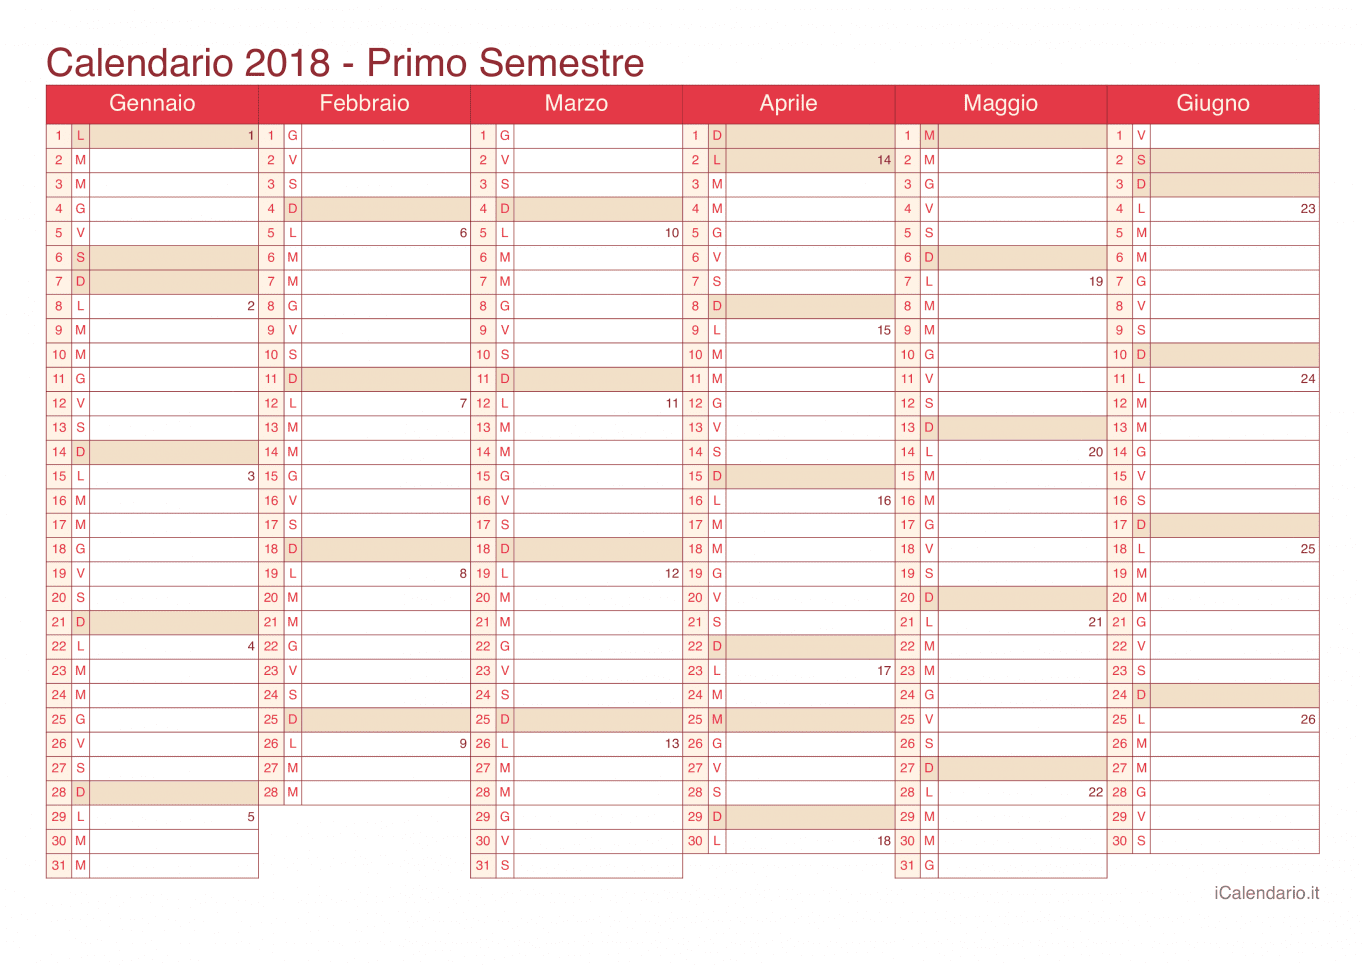 Calendario semestrale con numeri delle settimane 2018 - Cherry